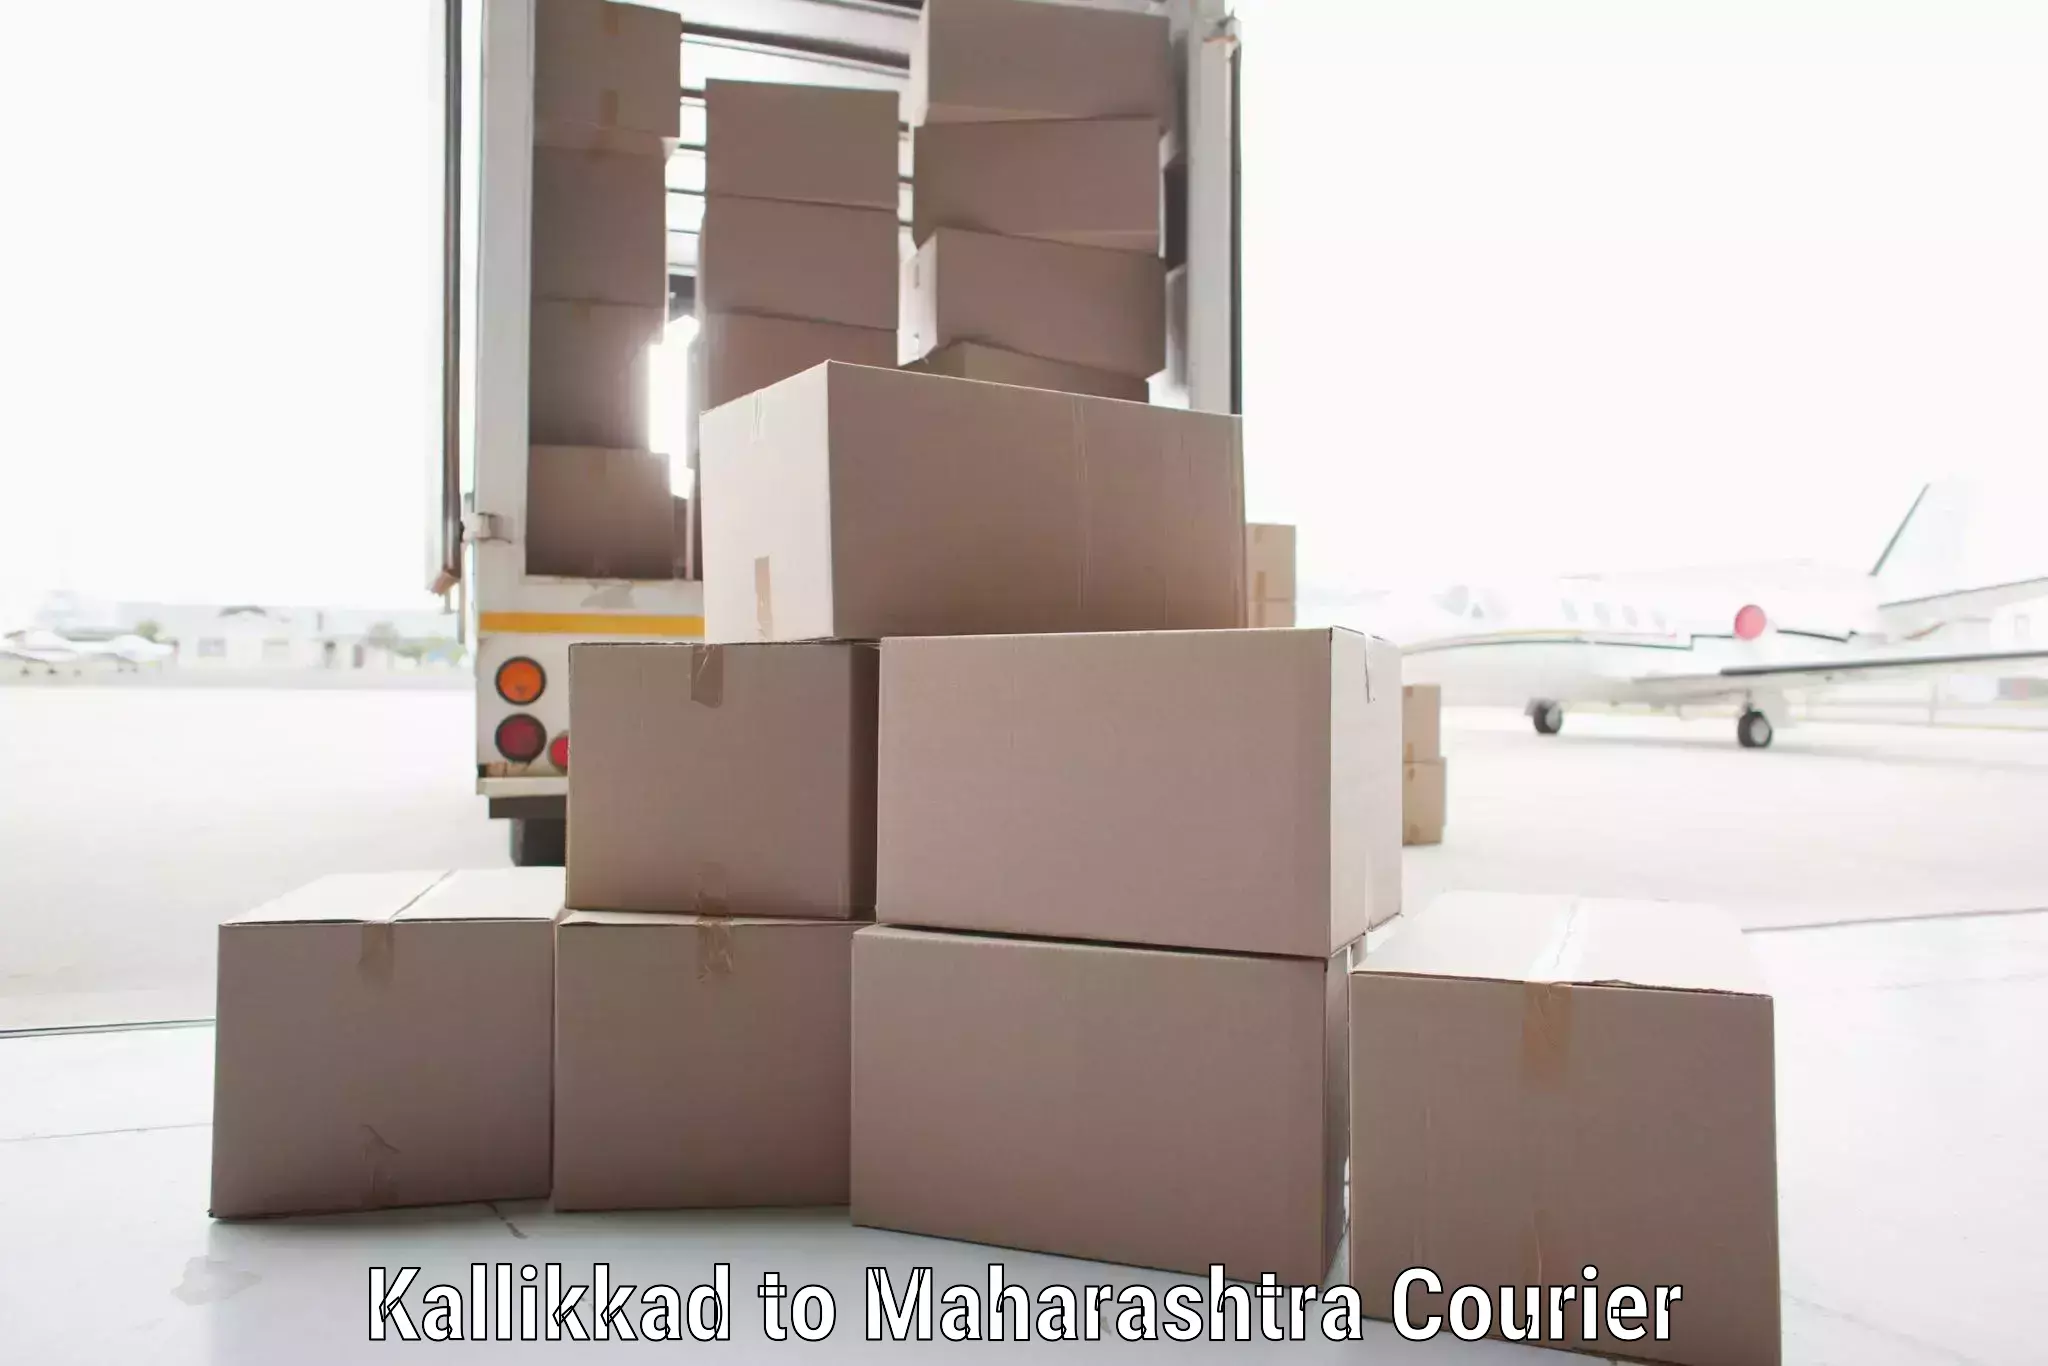 Seamless shipping experience Kallikkad to Maharashtra